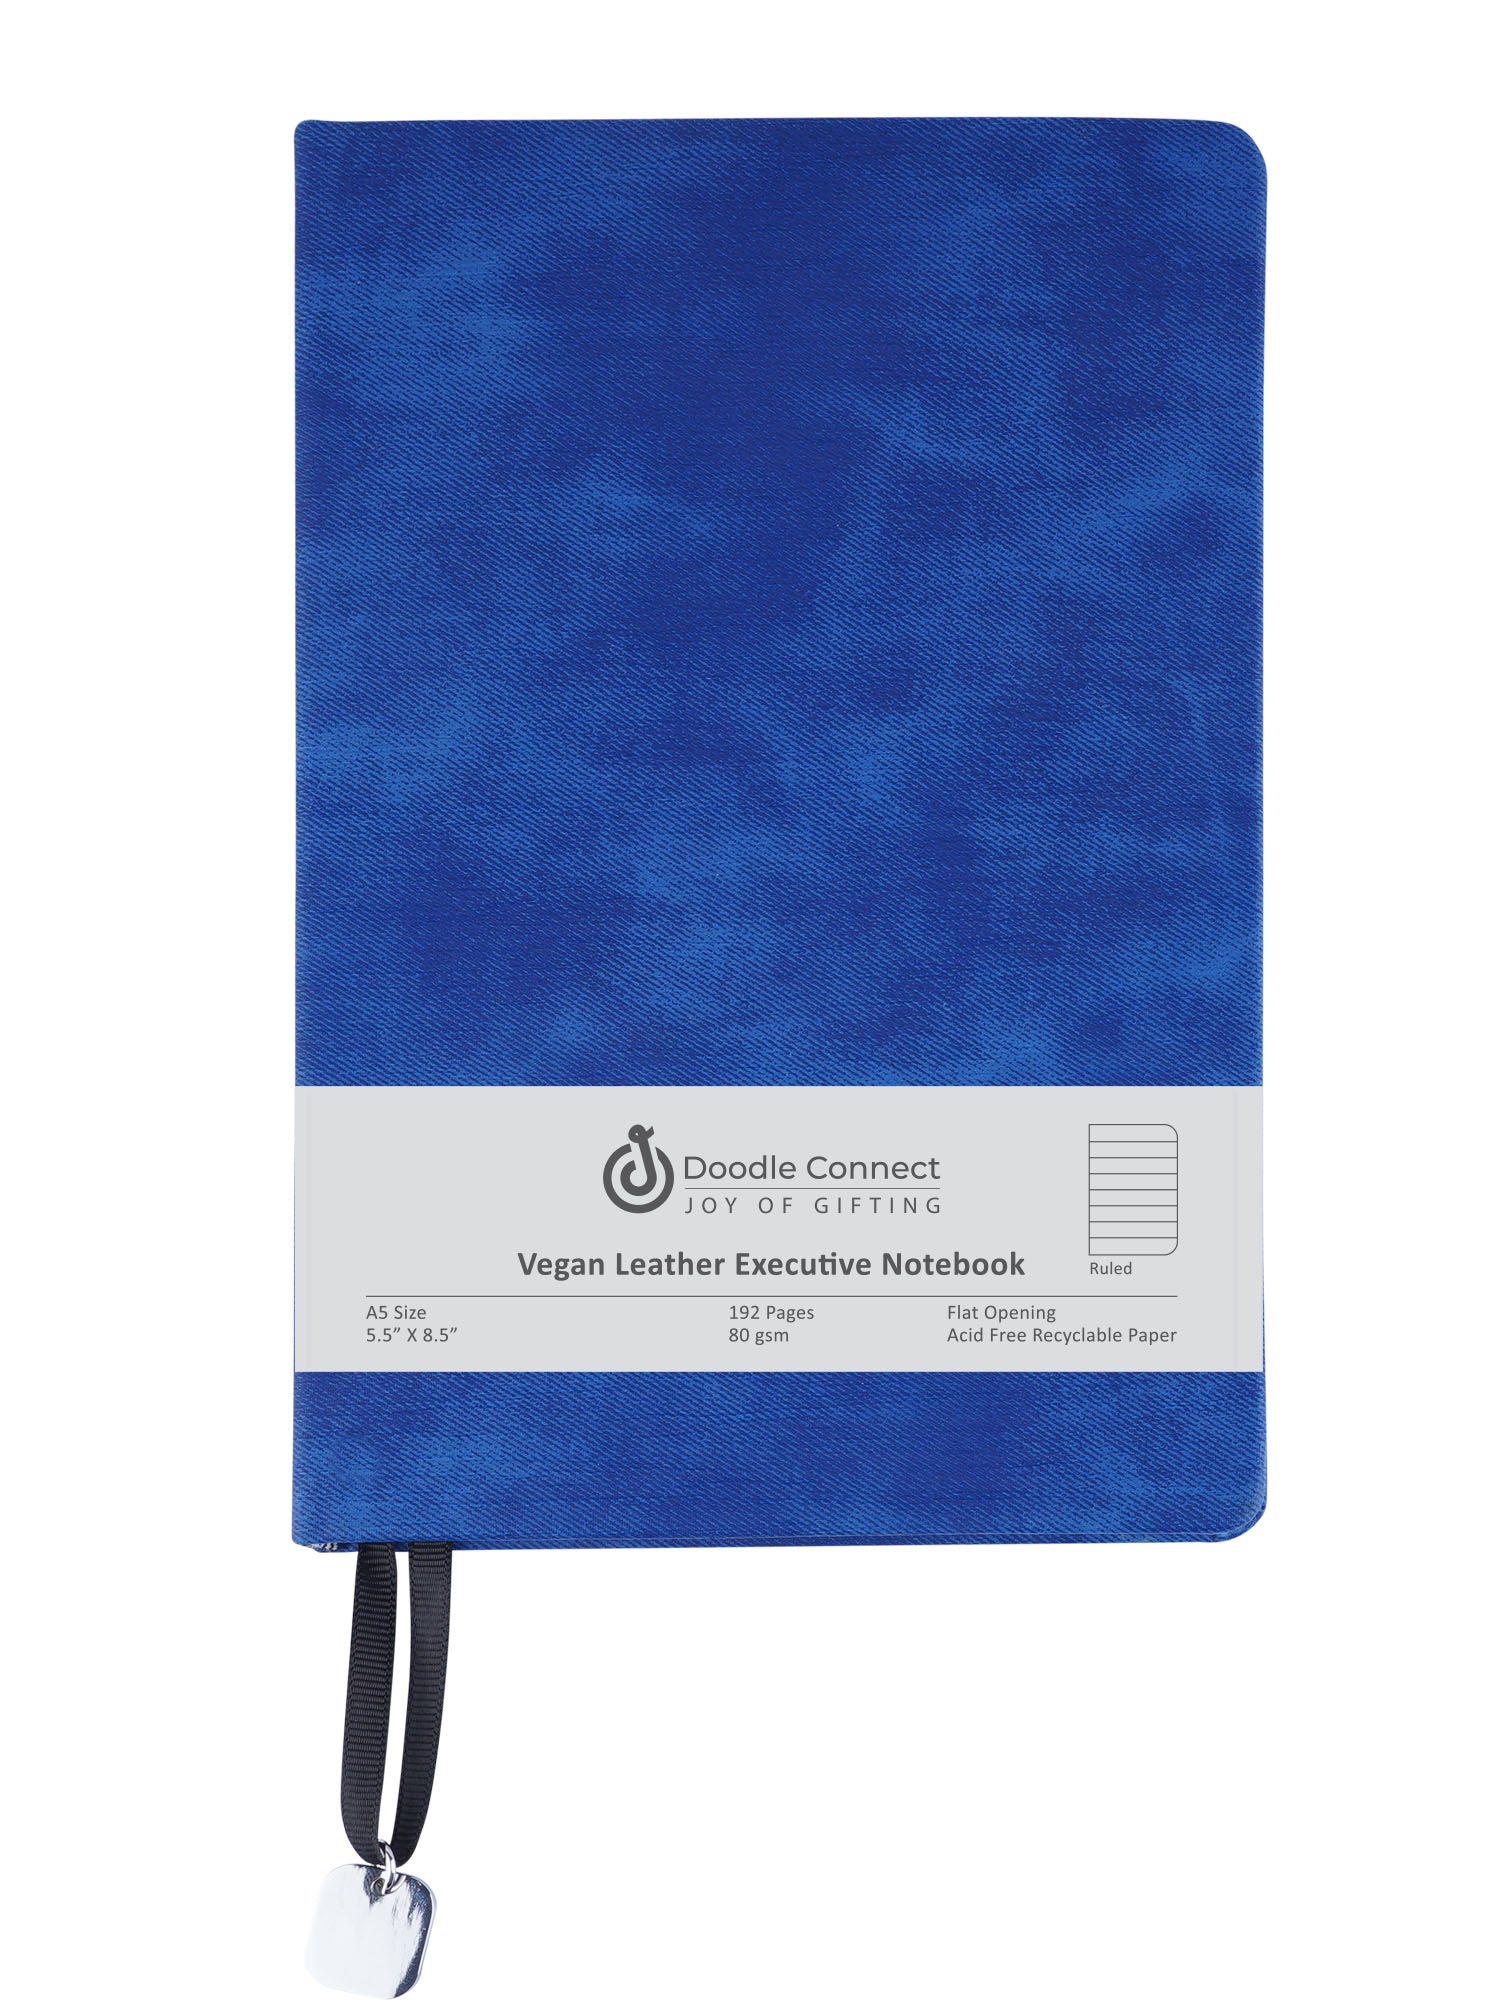 Vogue - Blue Notebook